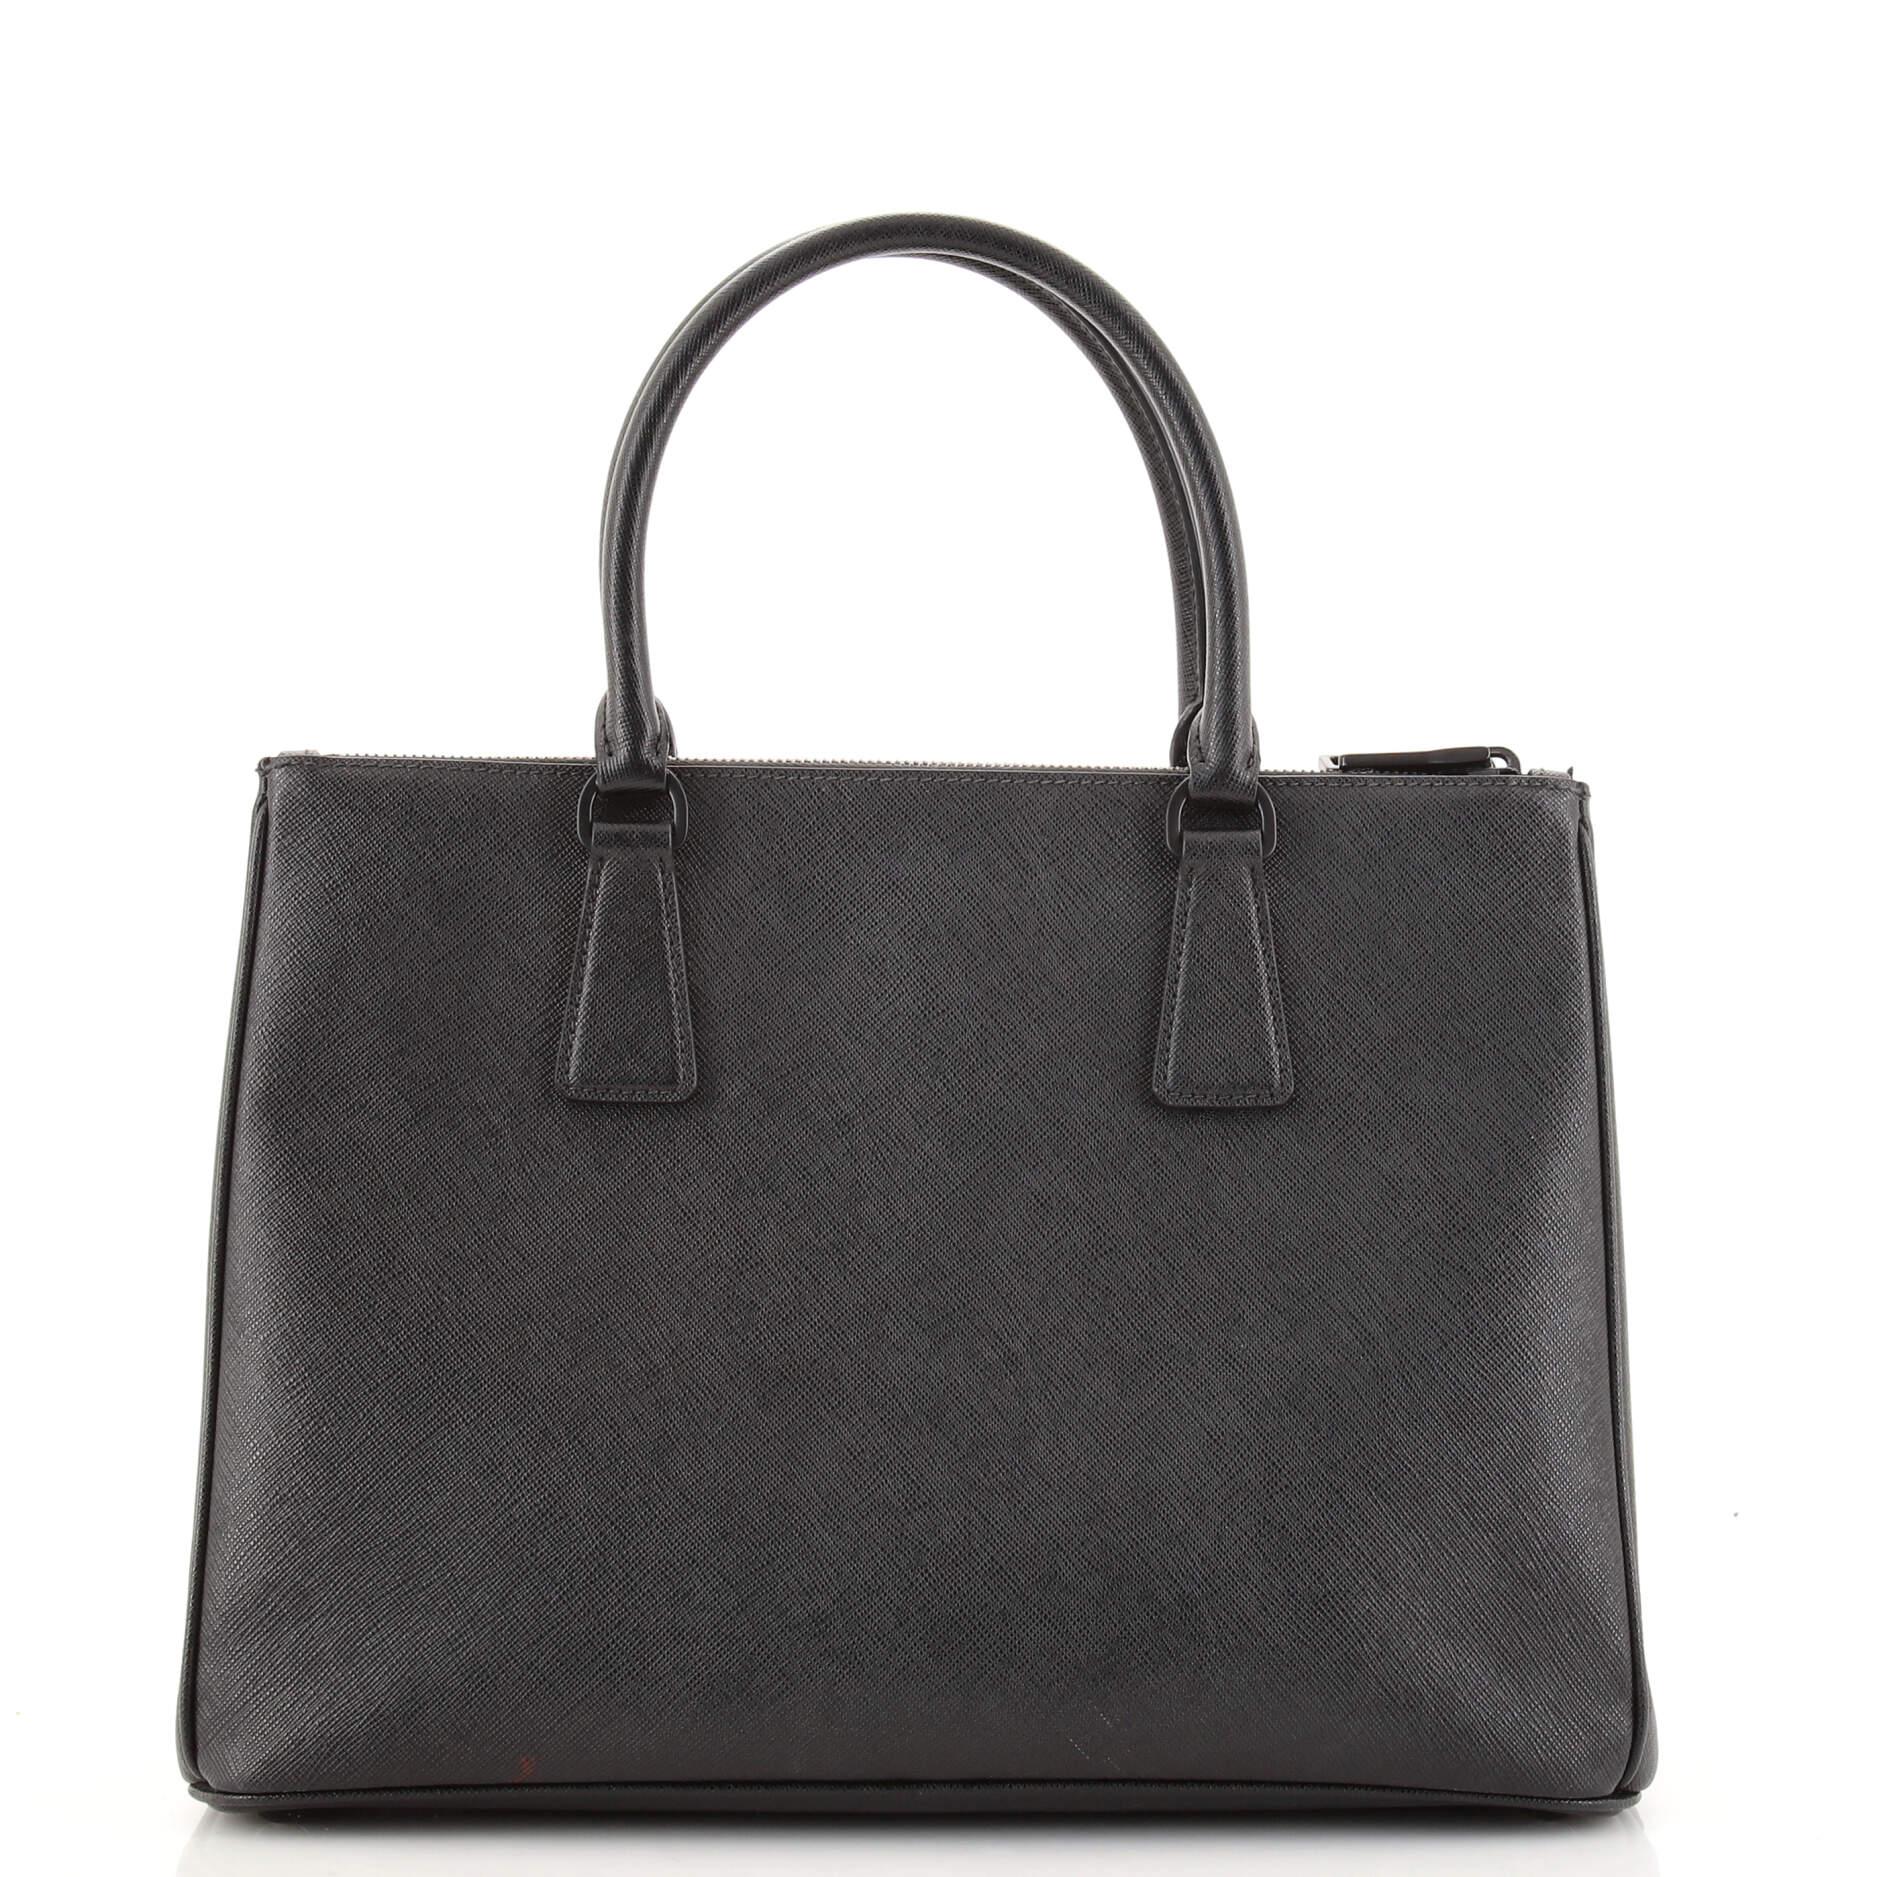 Black Prada Galleria Double Zip Tote Saffiano Leather Medium